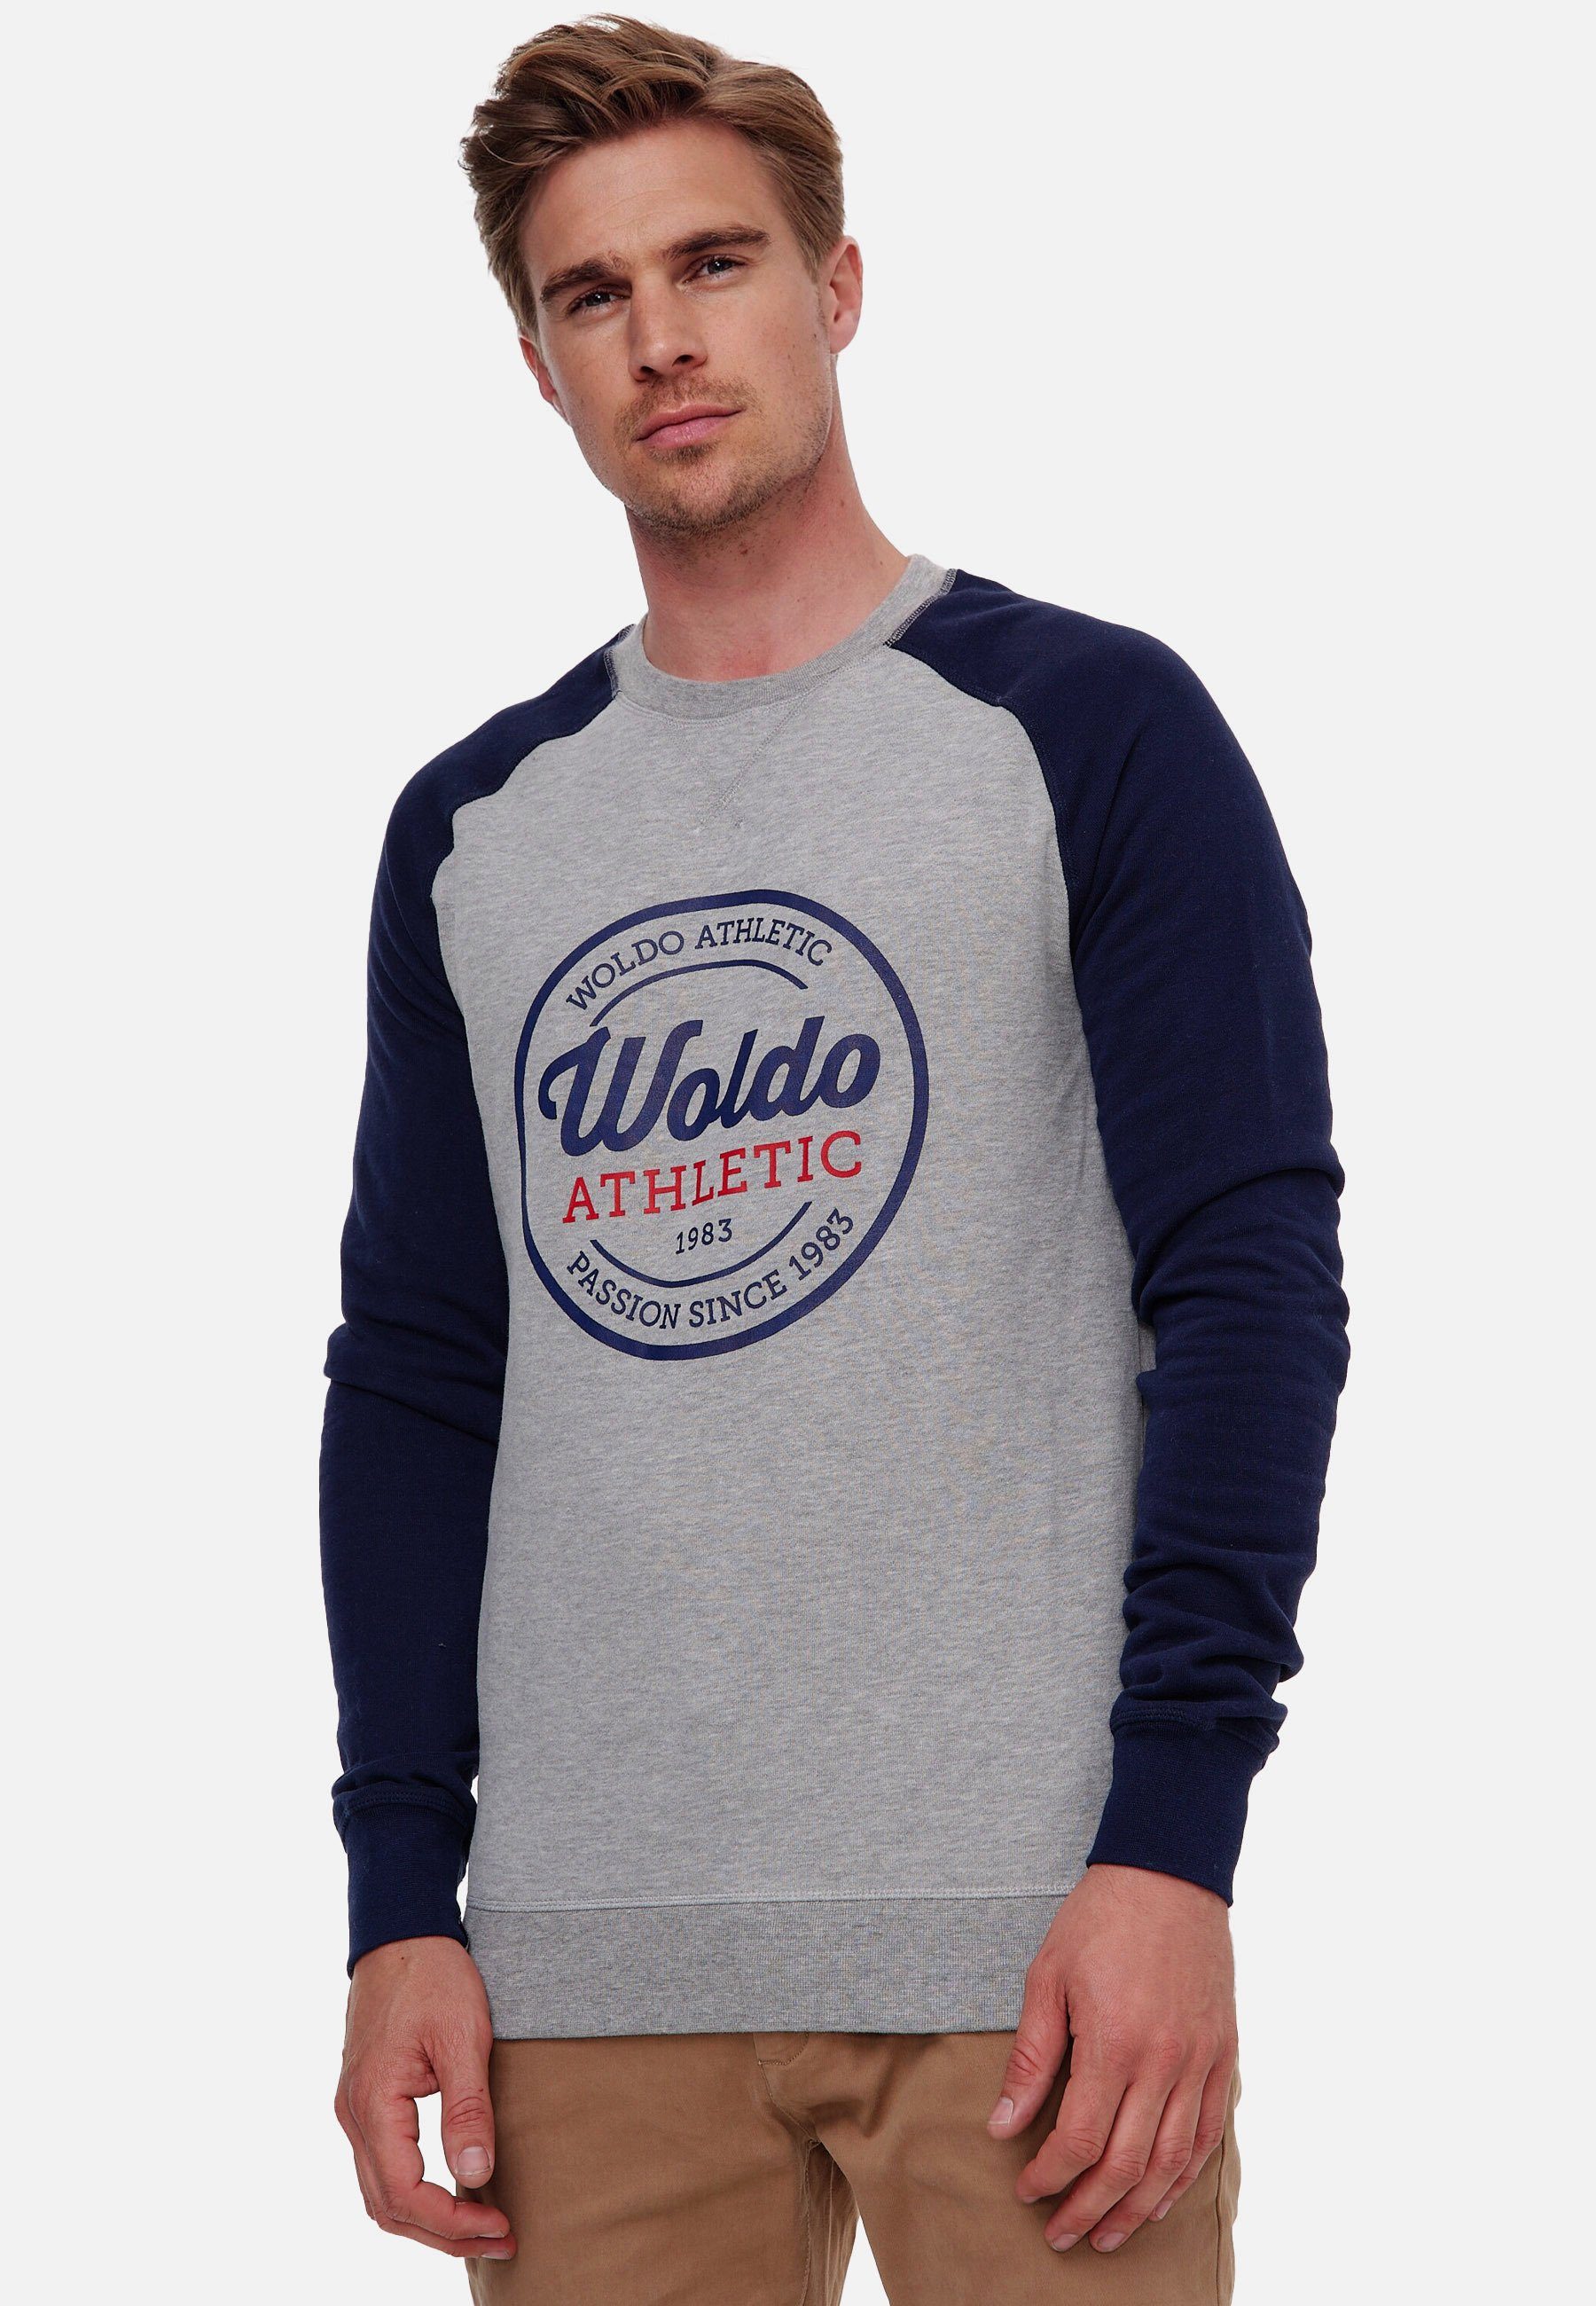 Woldo Athletic Sweatshirt Longsleeve Runder Print